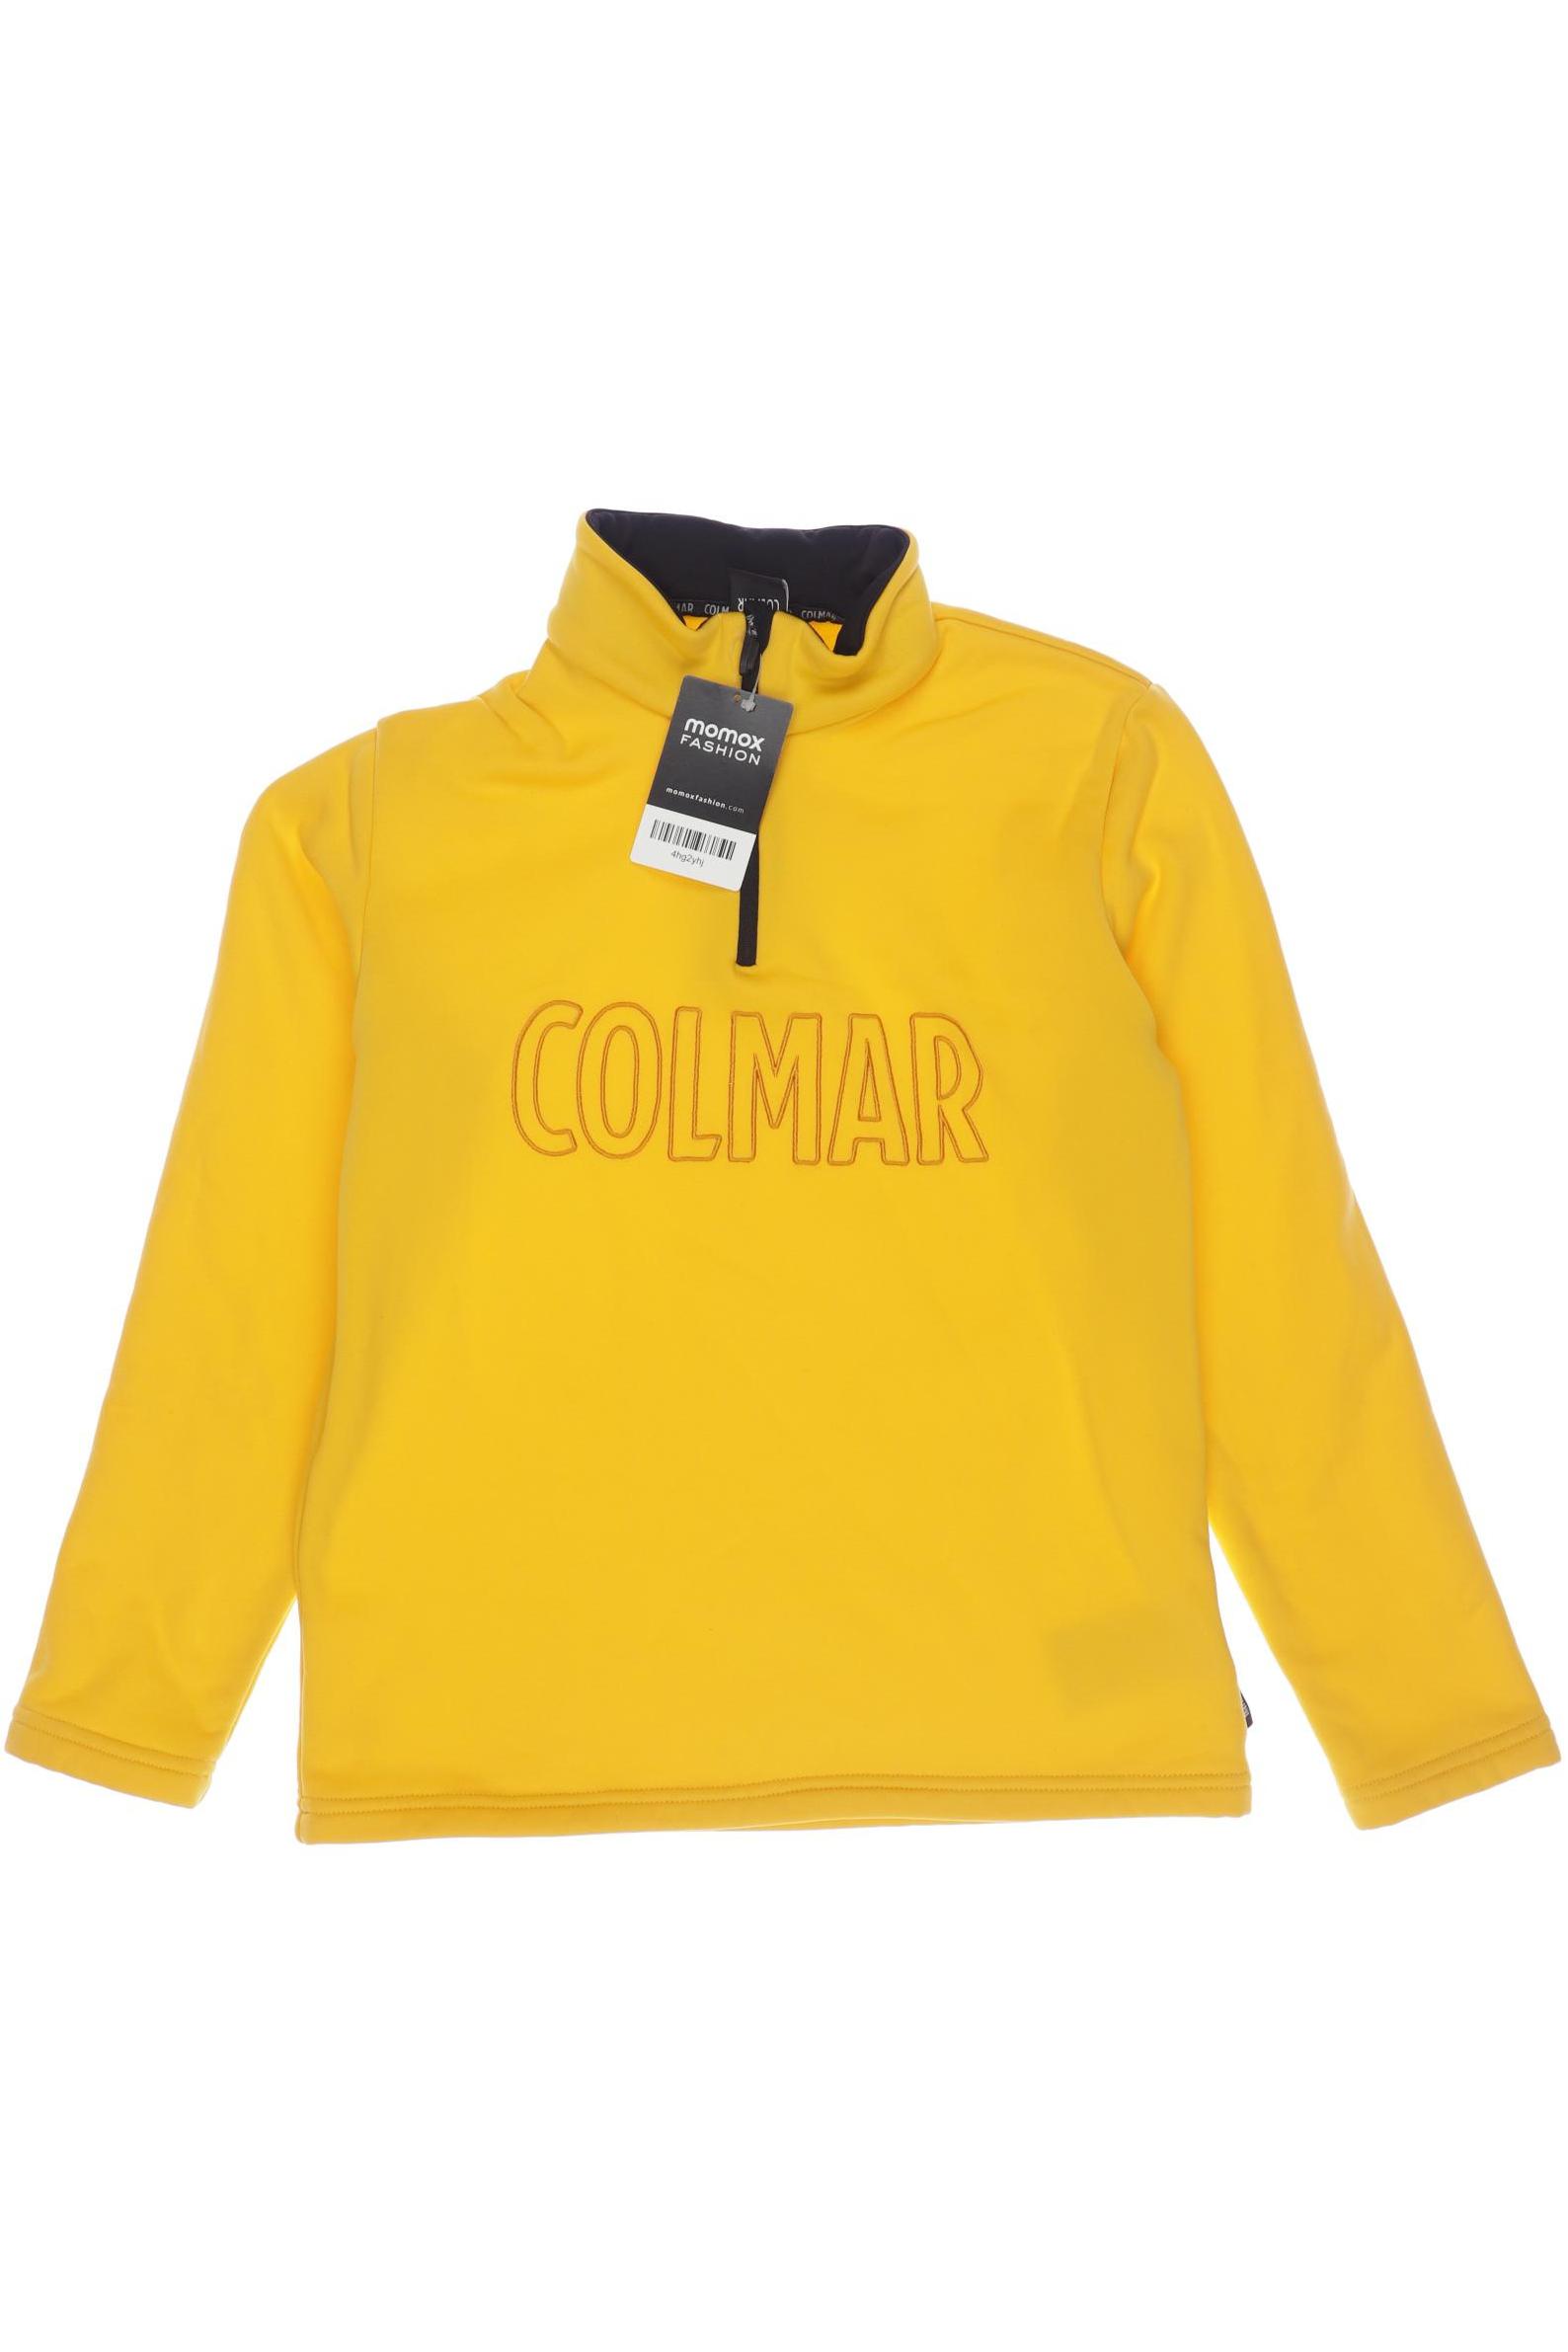 Colmar Herren Hoodies & Sweater, orange, Gr. 152 von Colmar